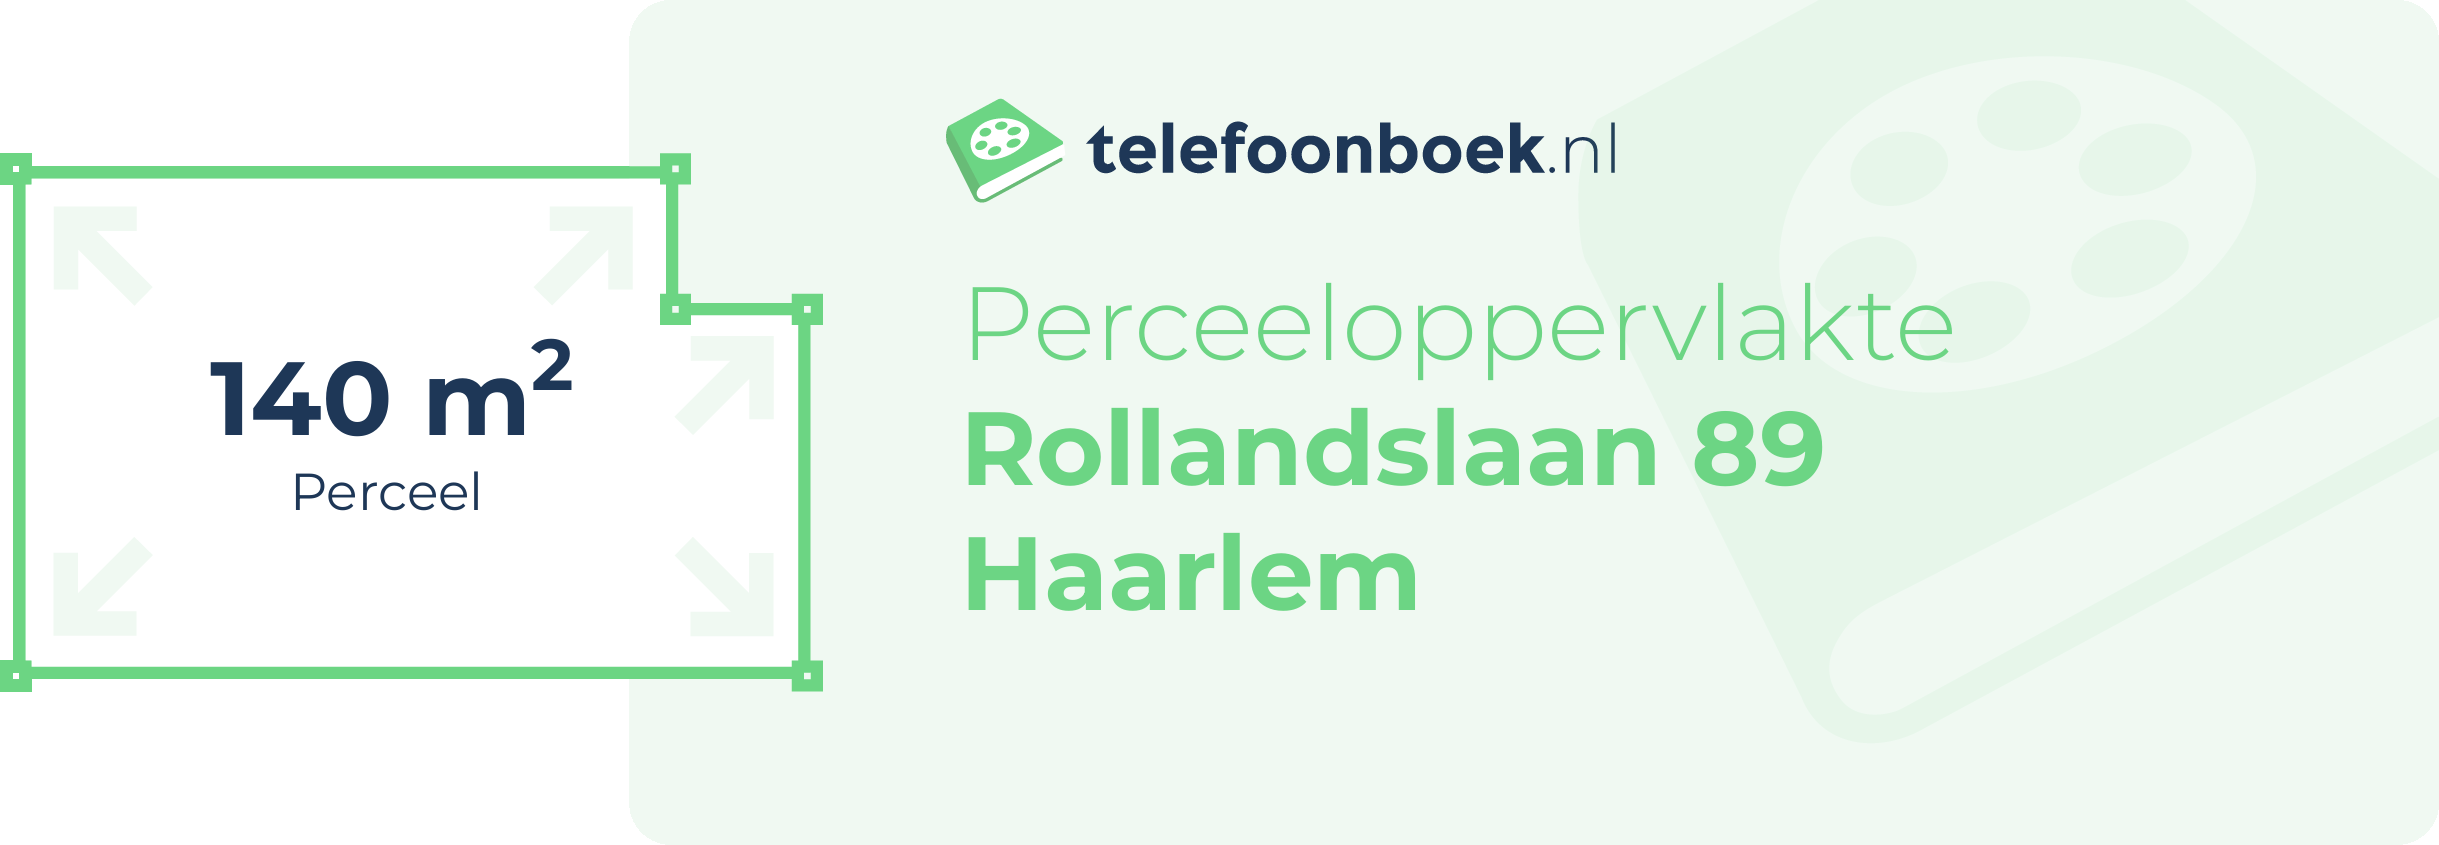 Perceeloppervlakte Rollandslaan 89 Haarlem